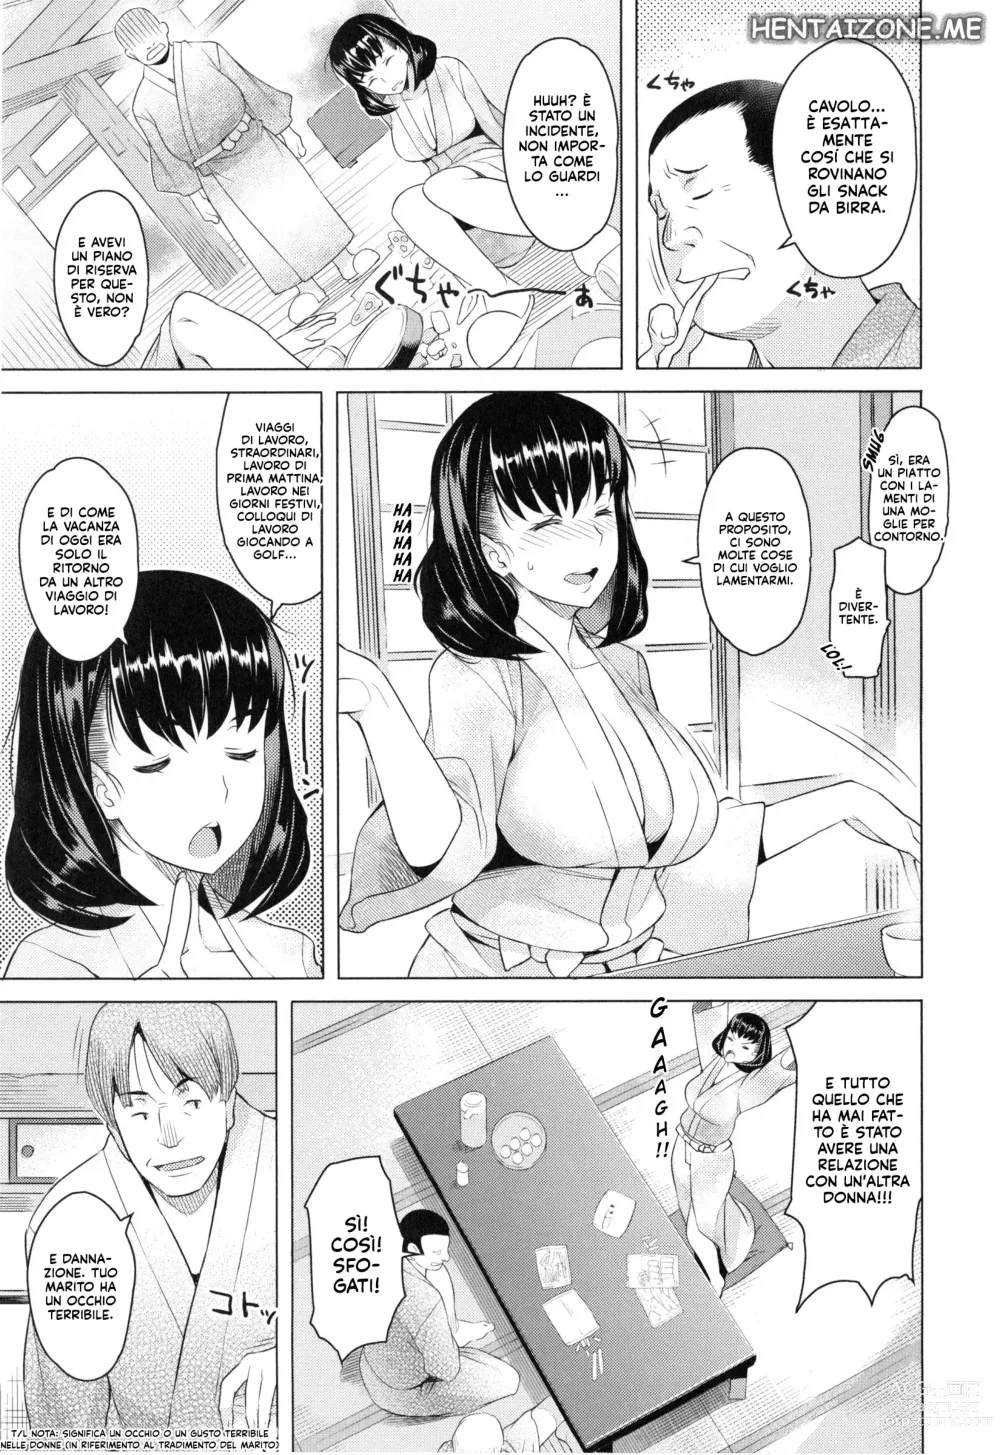 Page 3 of manga Con una Moglie